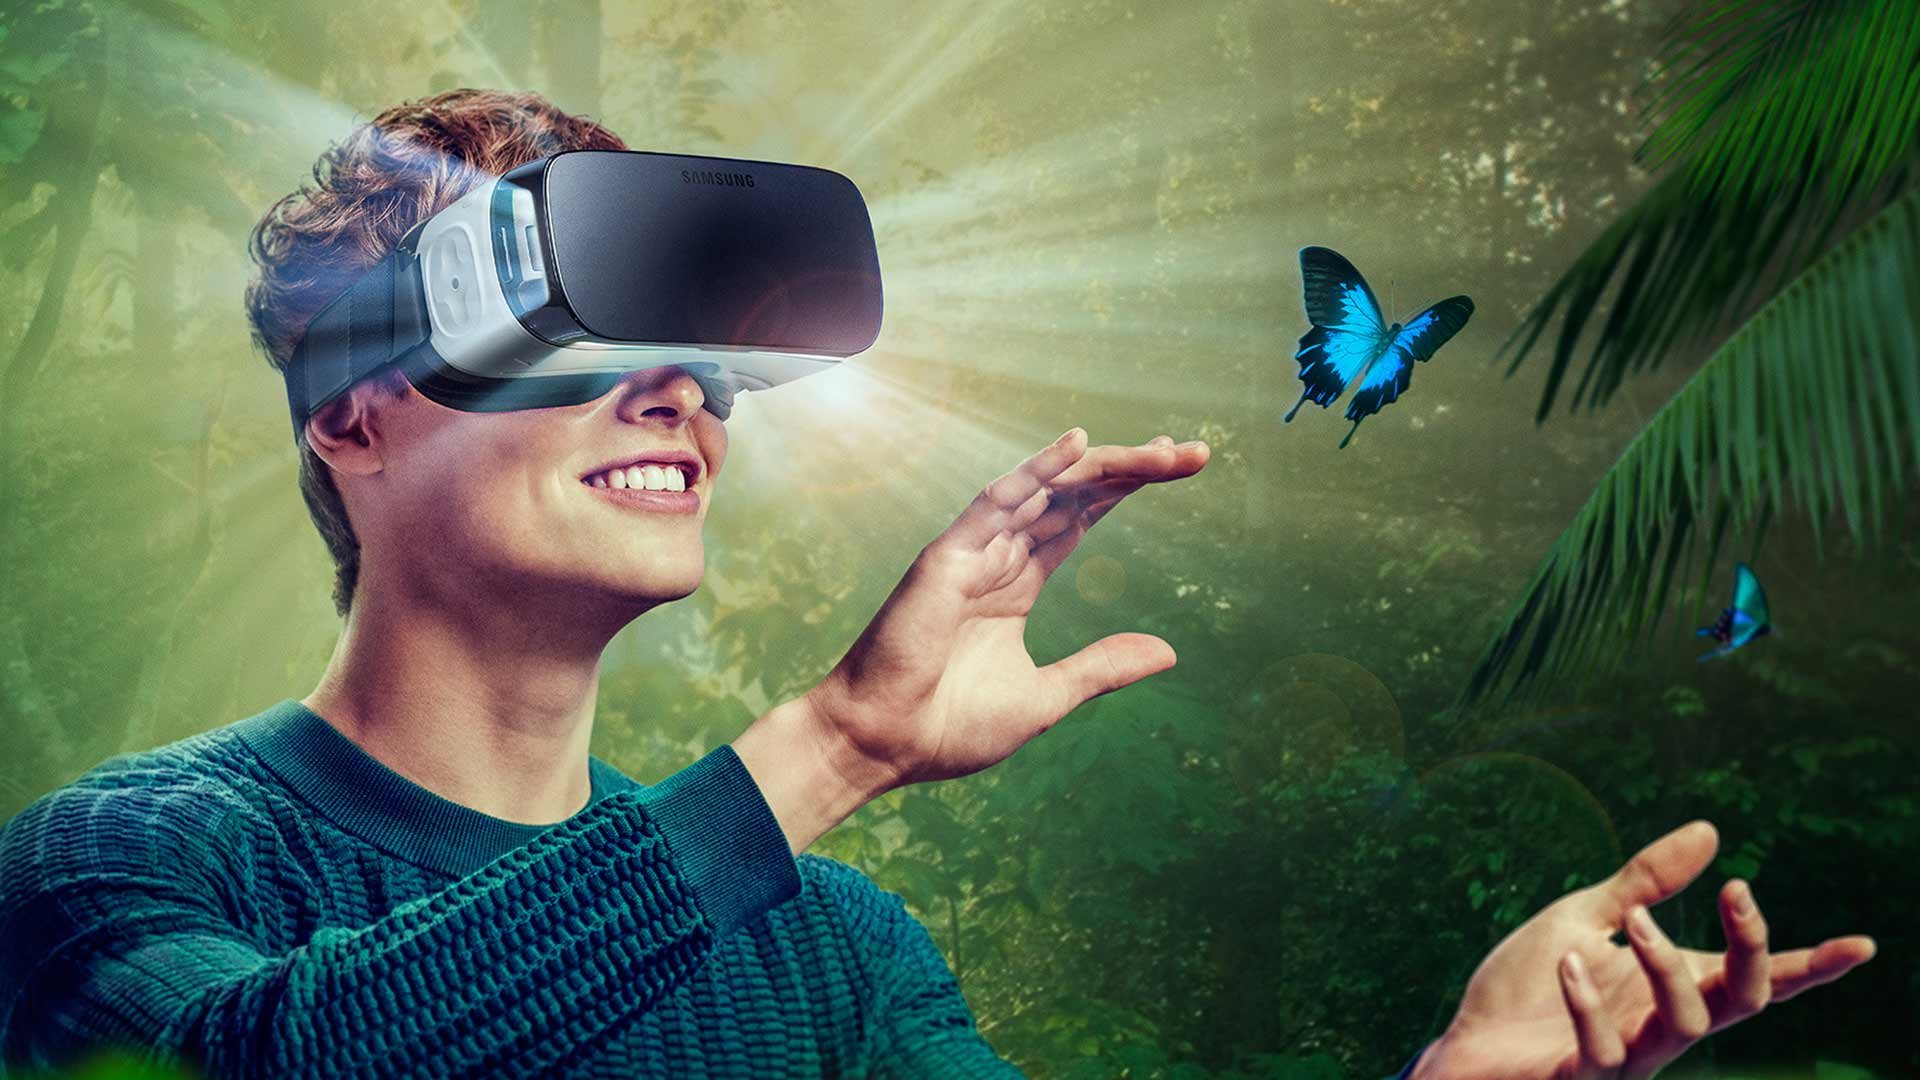 Samsung Gear VR : Nous avons testé l'immersion virtuelle